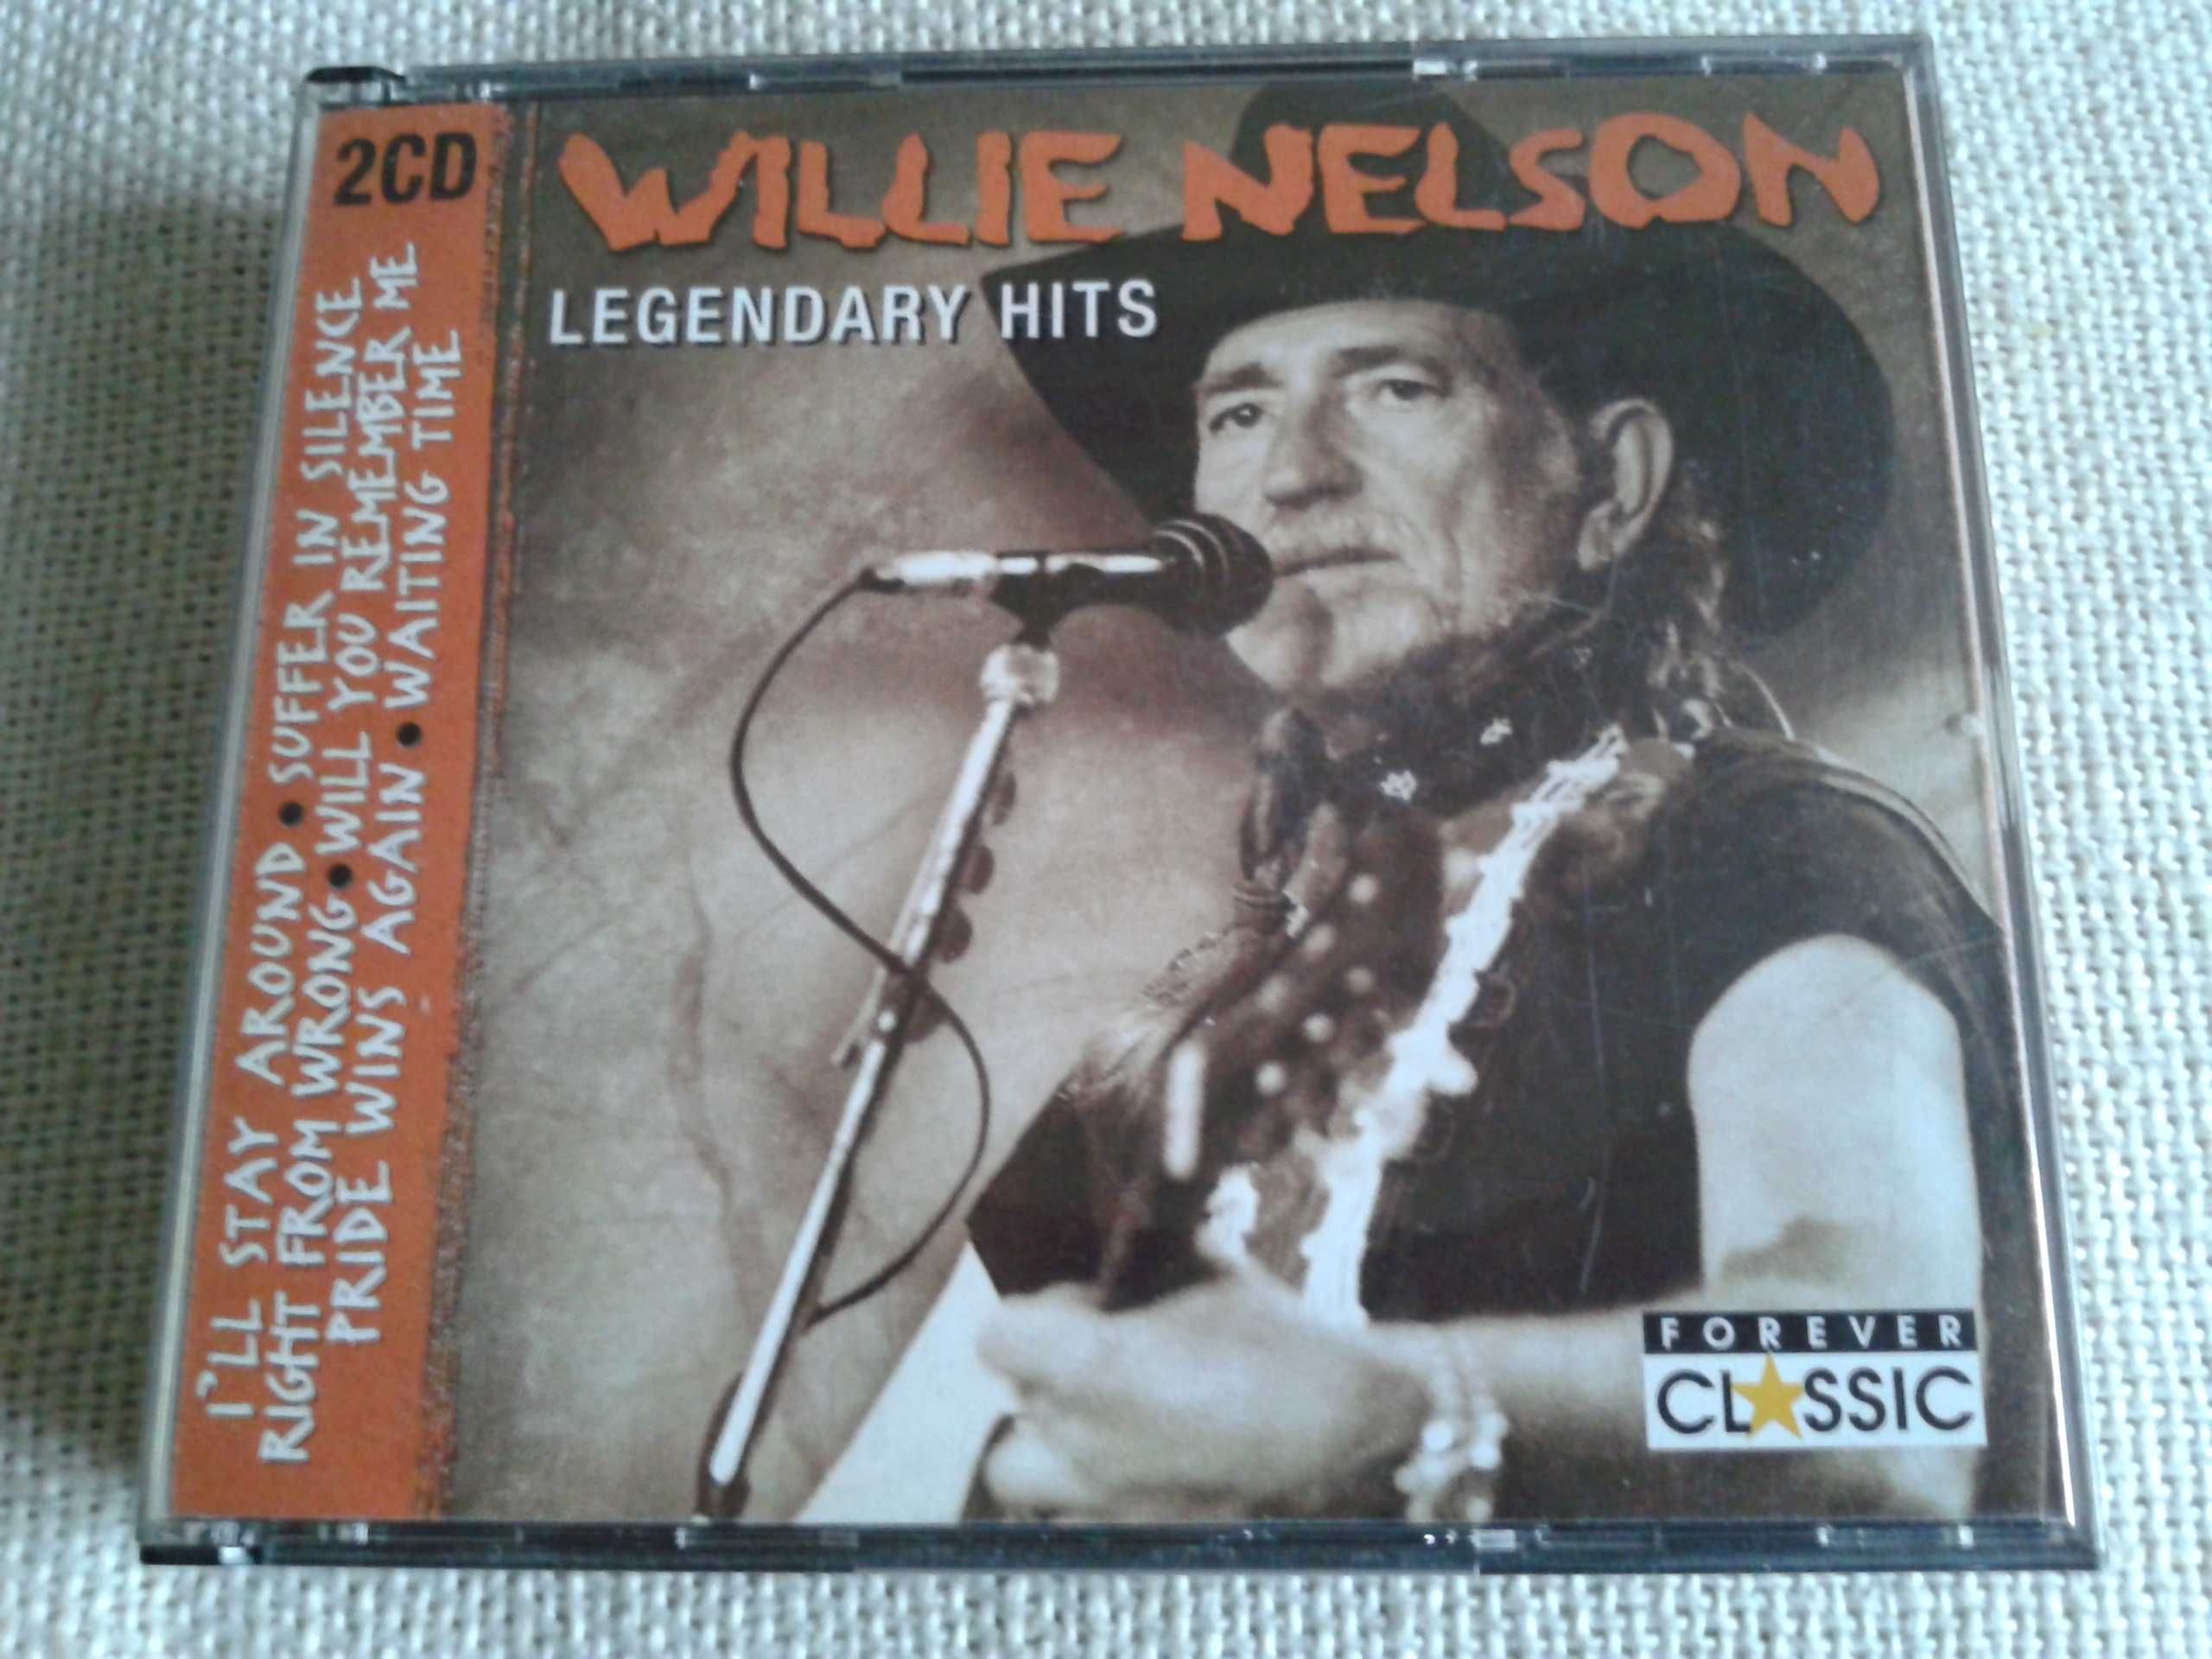 Willie Nelson - Legendary Hits  2CD